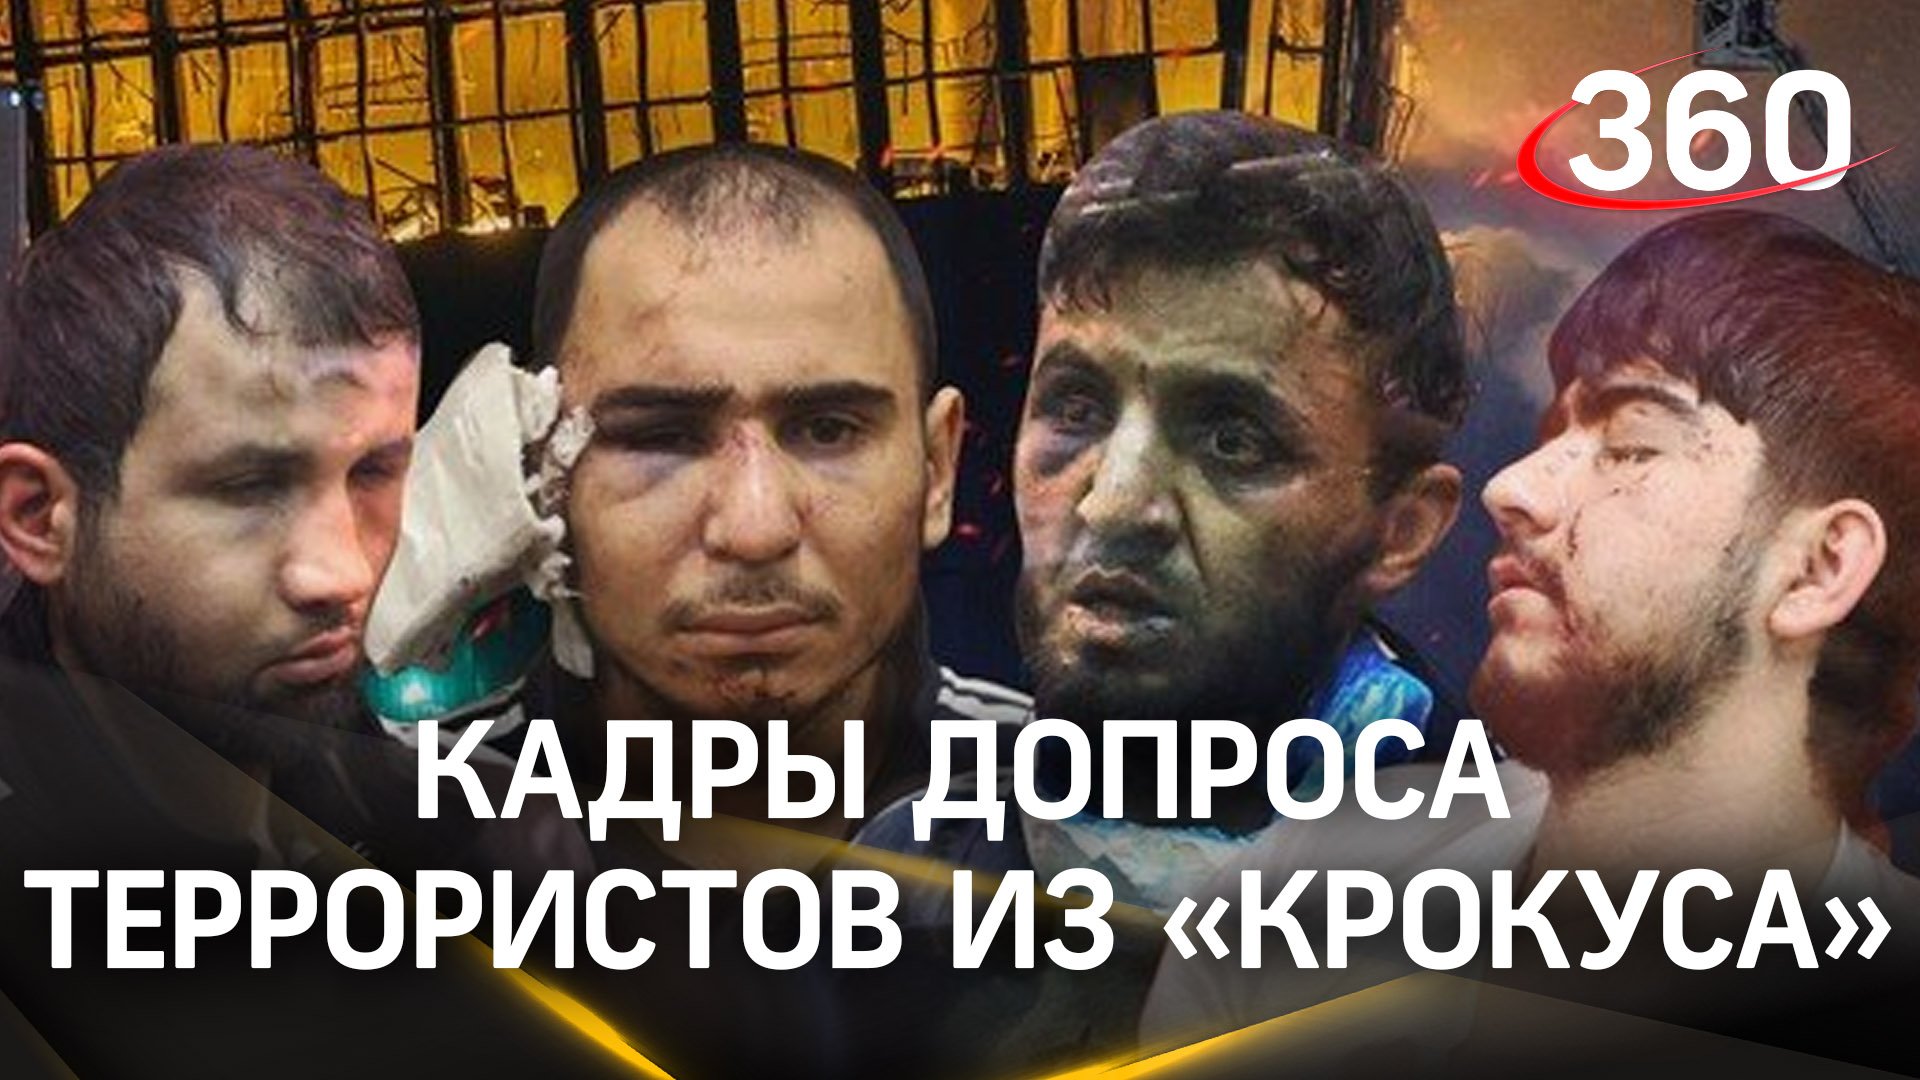 Допрос террористов из «Крокуса». Сколько денег обещал им координатор из Киева